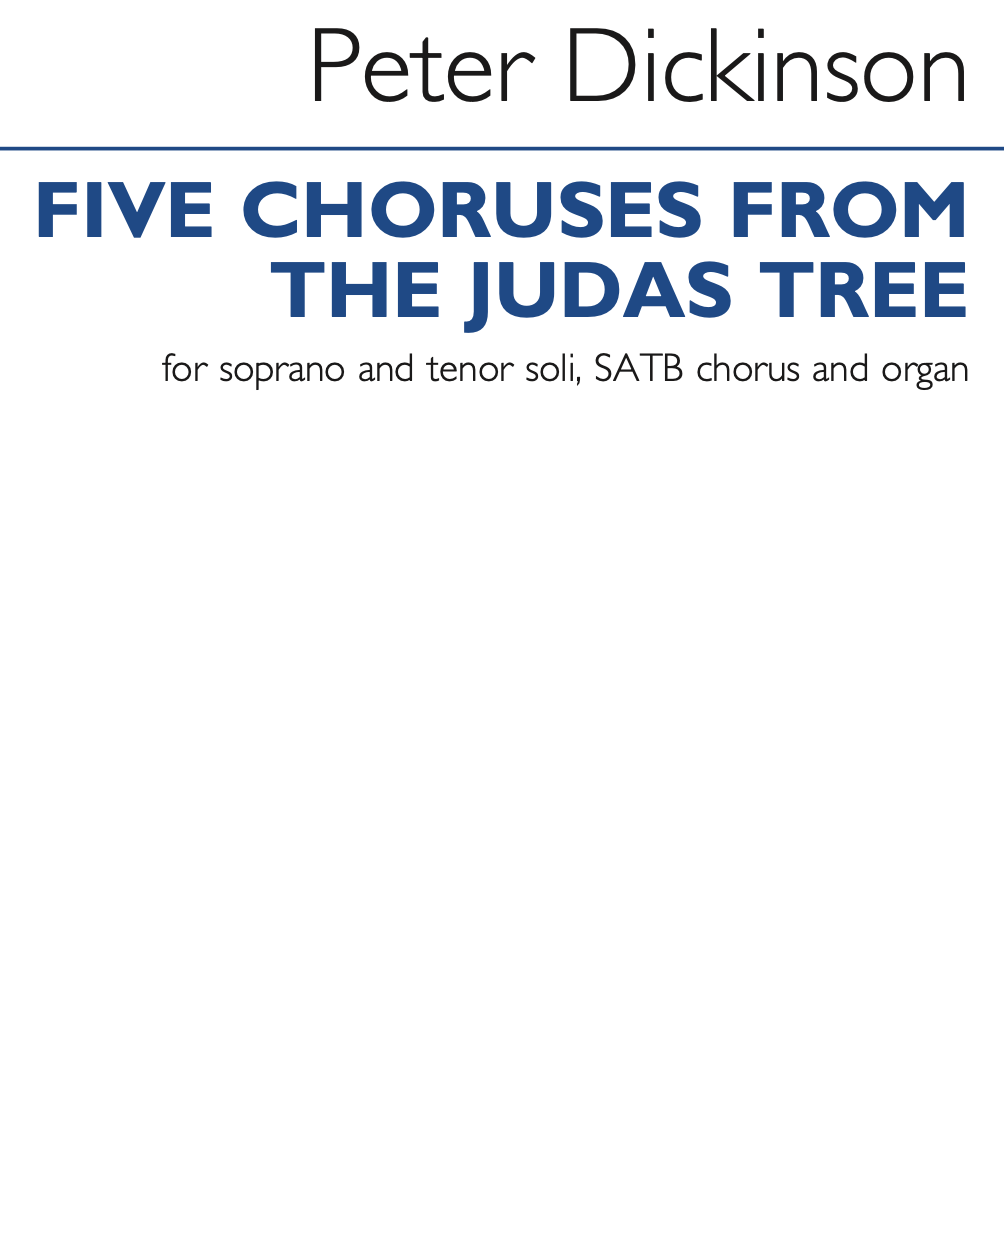 5 Choruses from 'The Judas Tree'